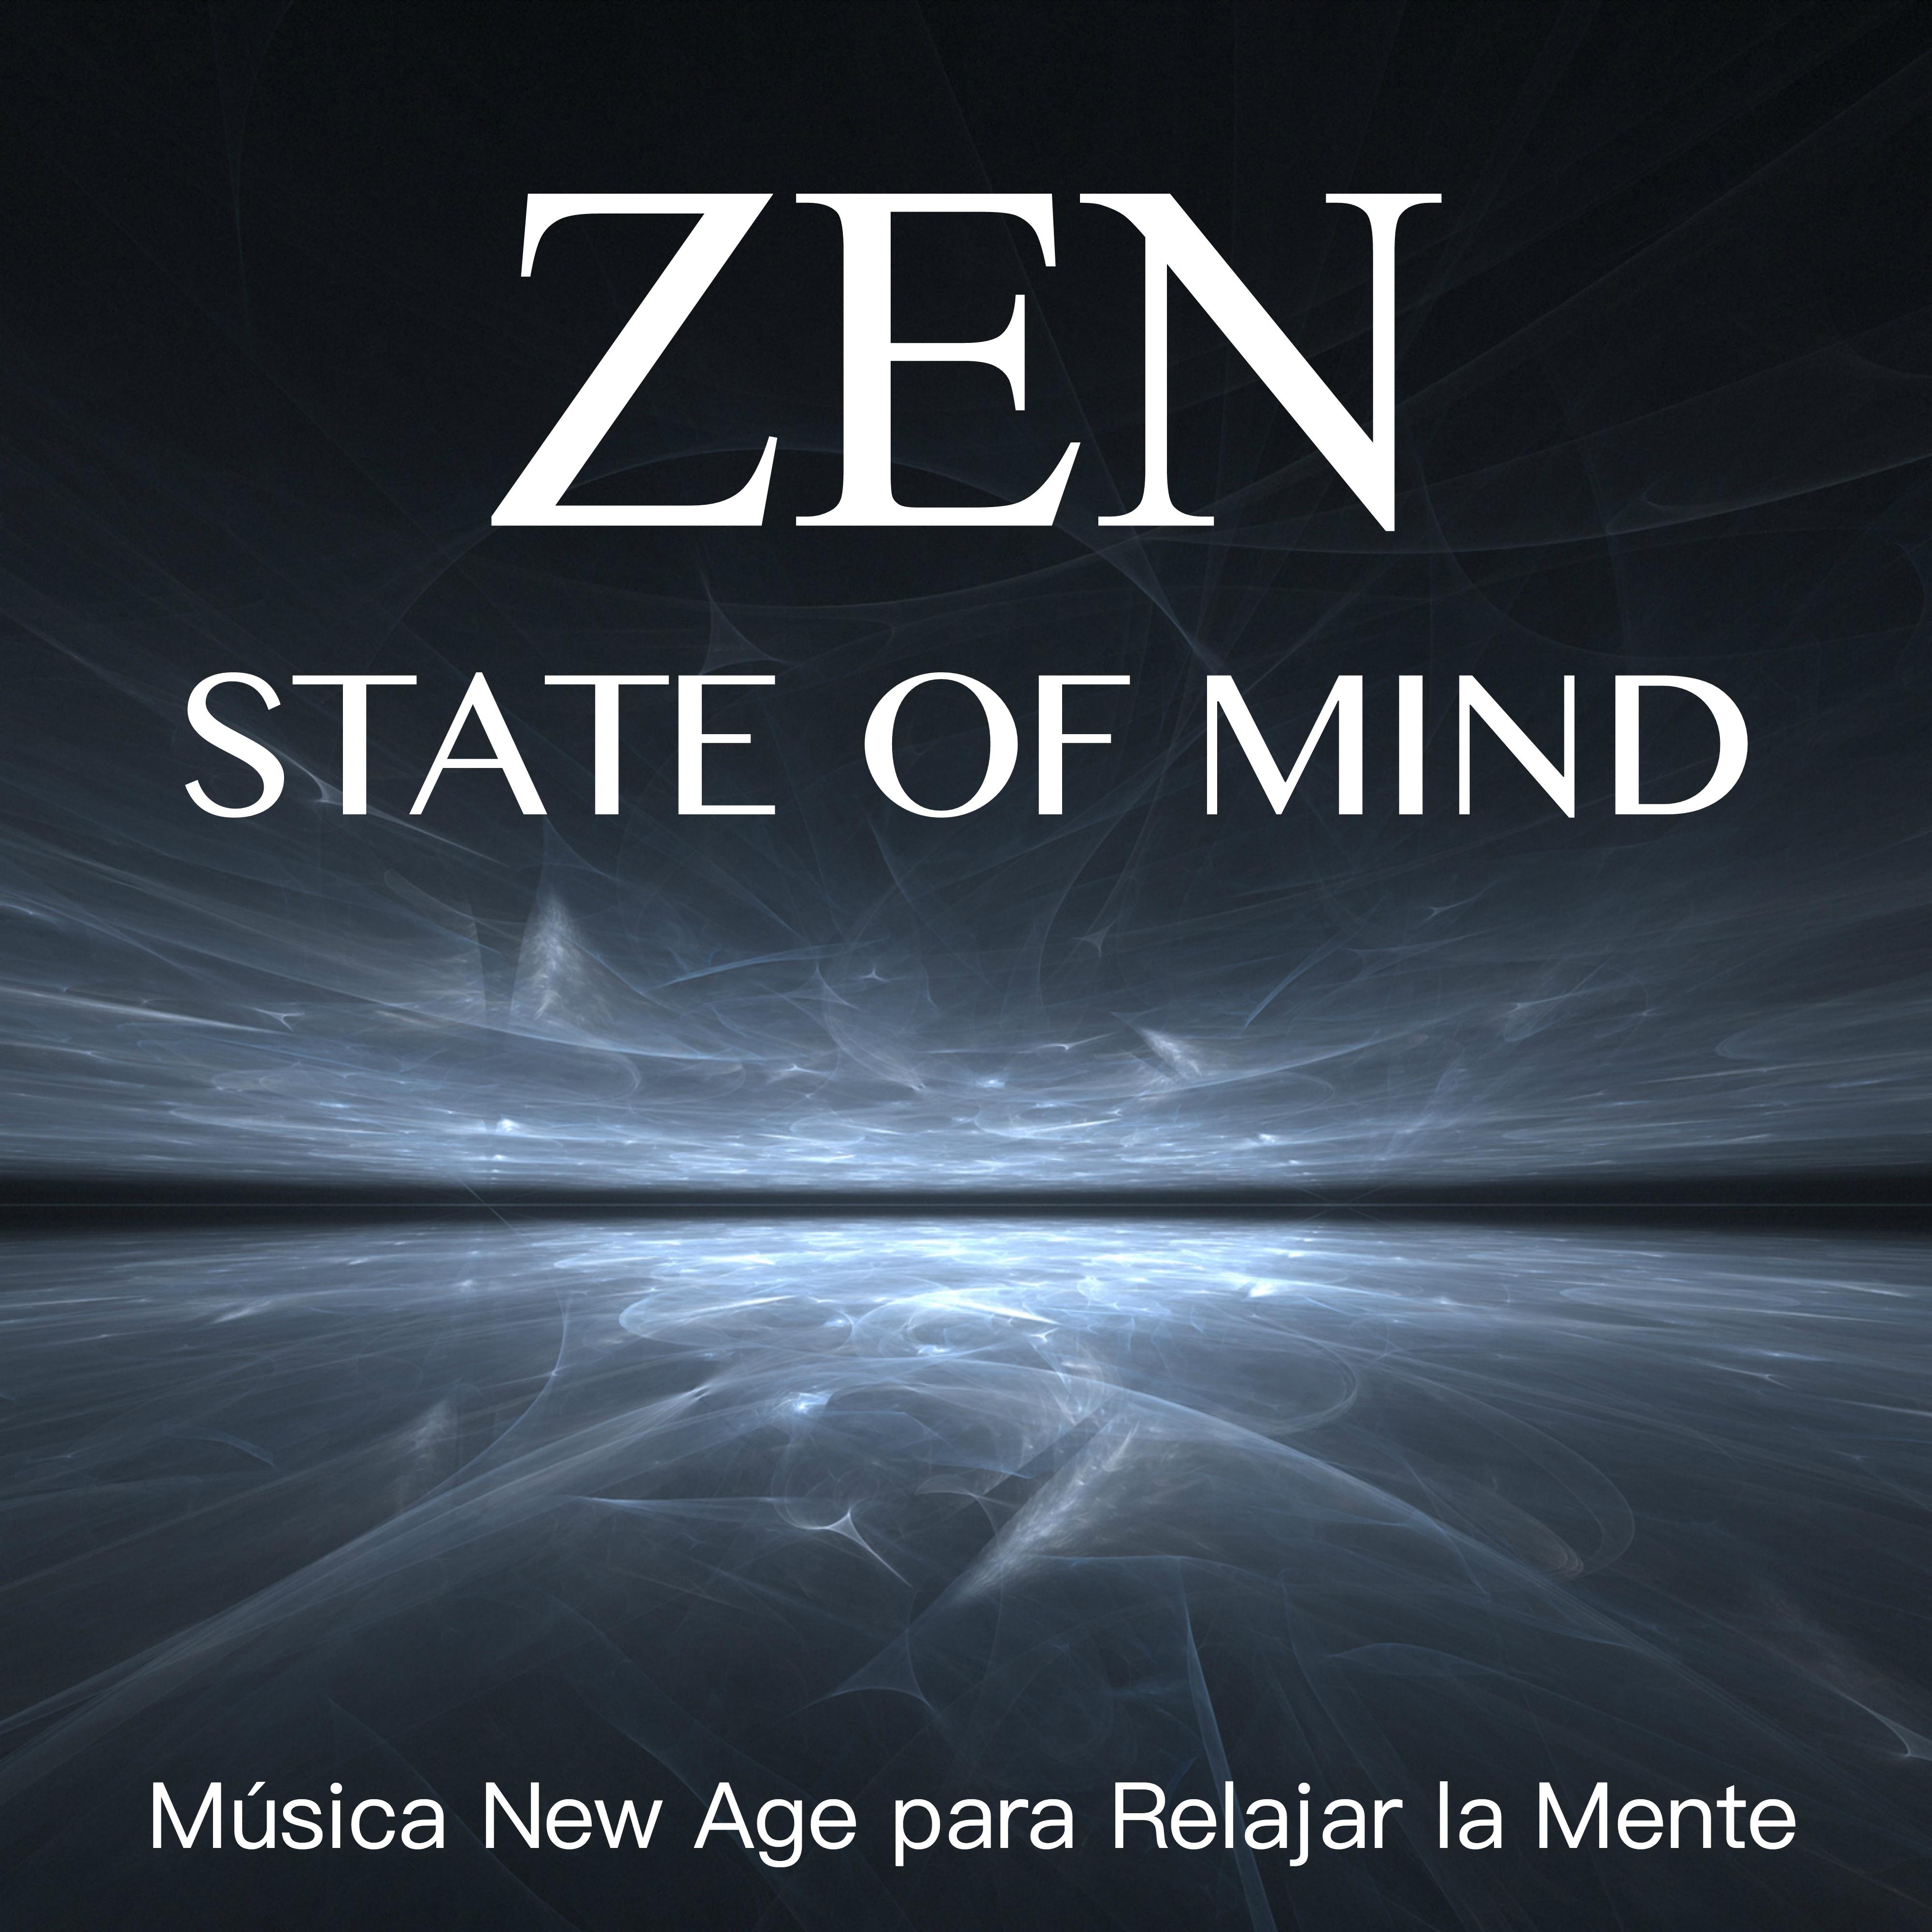 Zen State of Mind - Música New Age para Relajar la Mente con Sonidos de la Naturaleza y Sons del Agua para Relajación Profonda, Meditación, Dormir Bien, Masaje y Spa